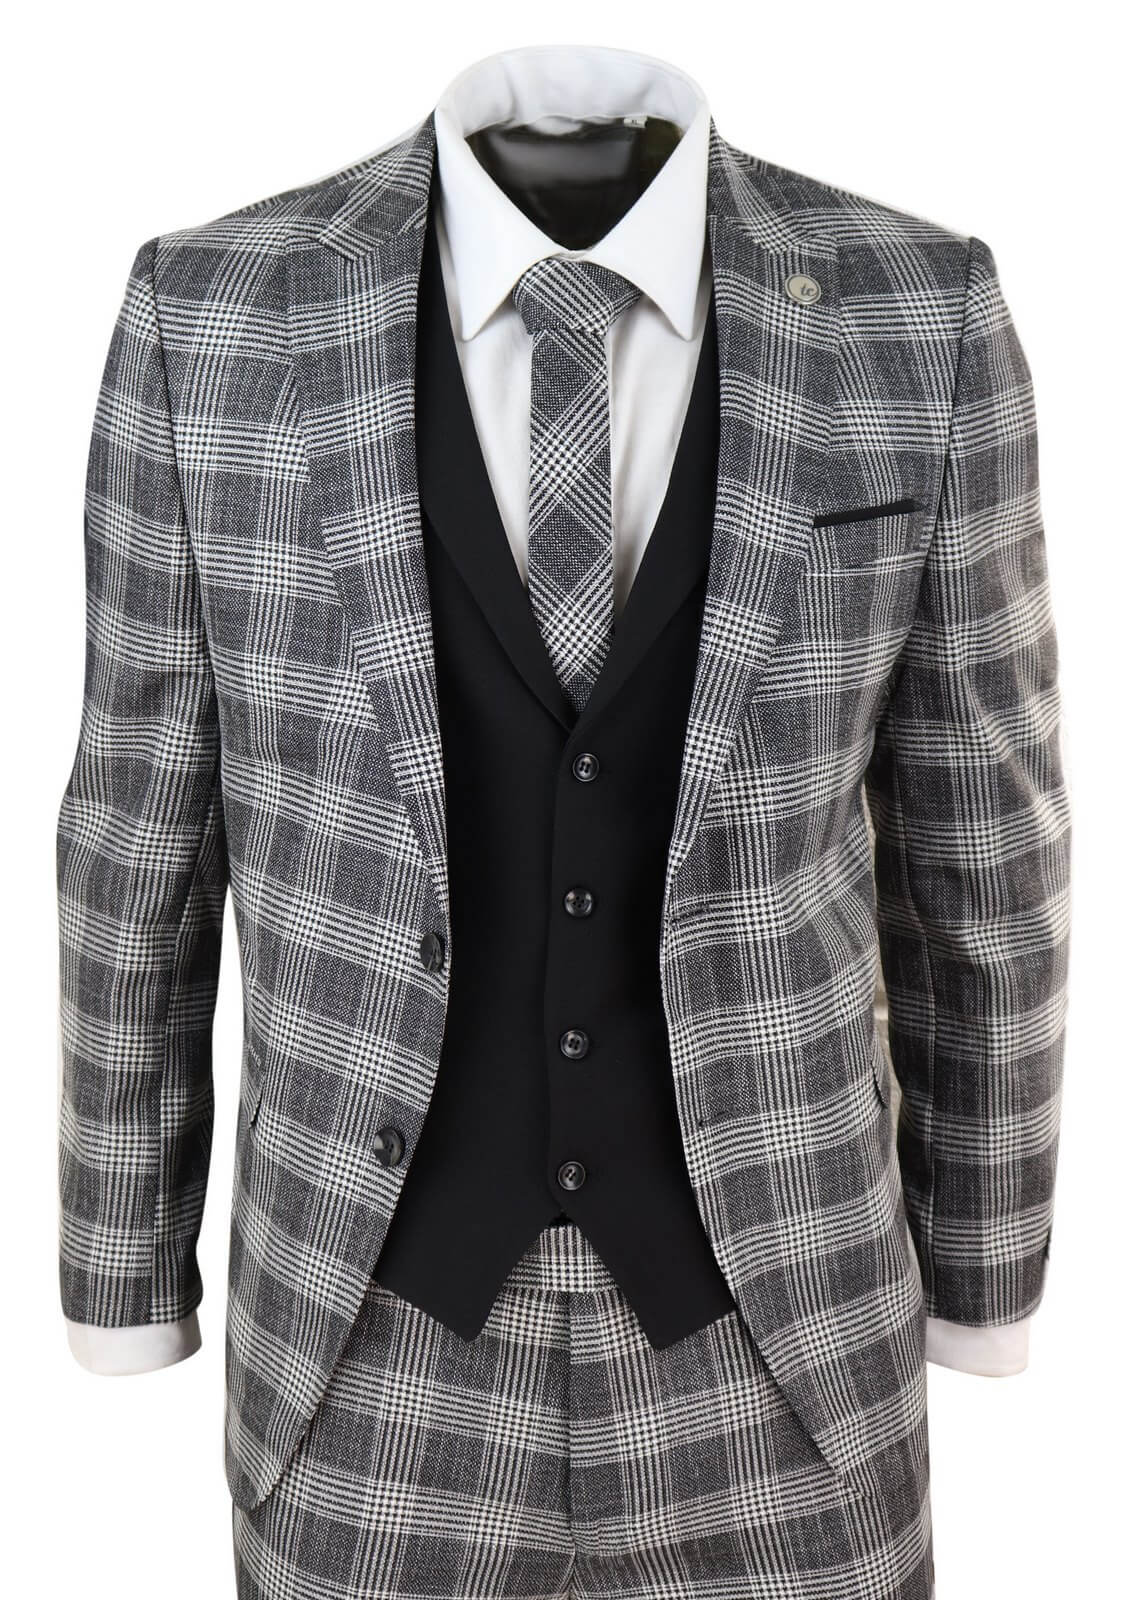 Men's Suits, 3-Piece, Black & Grey Check Suits